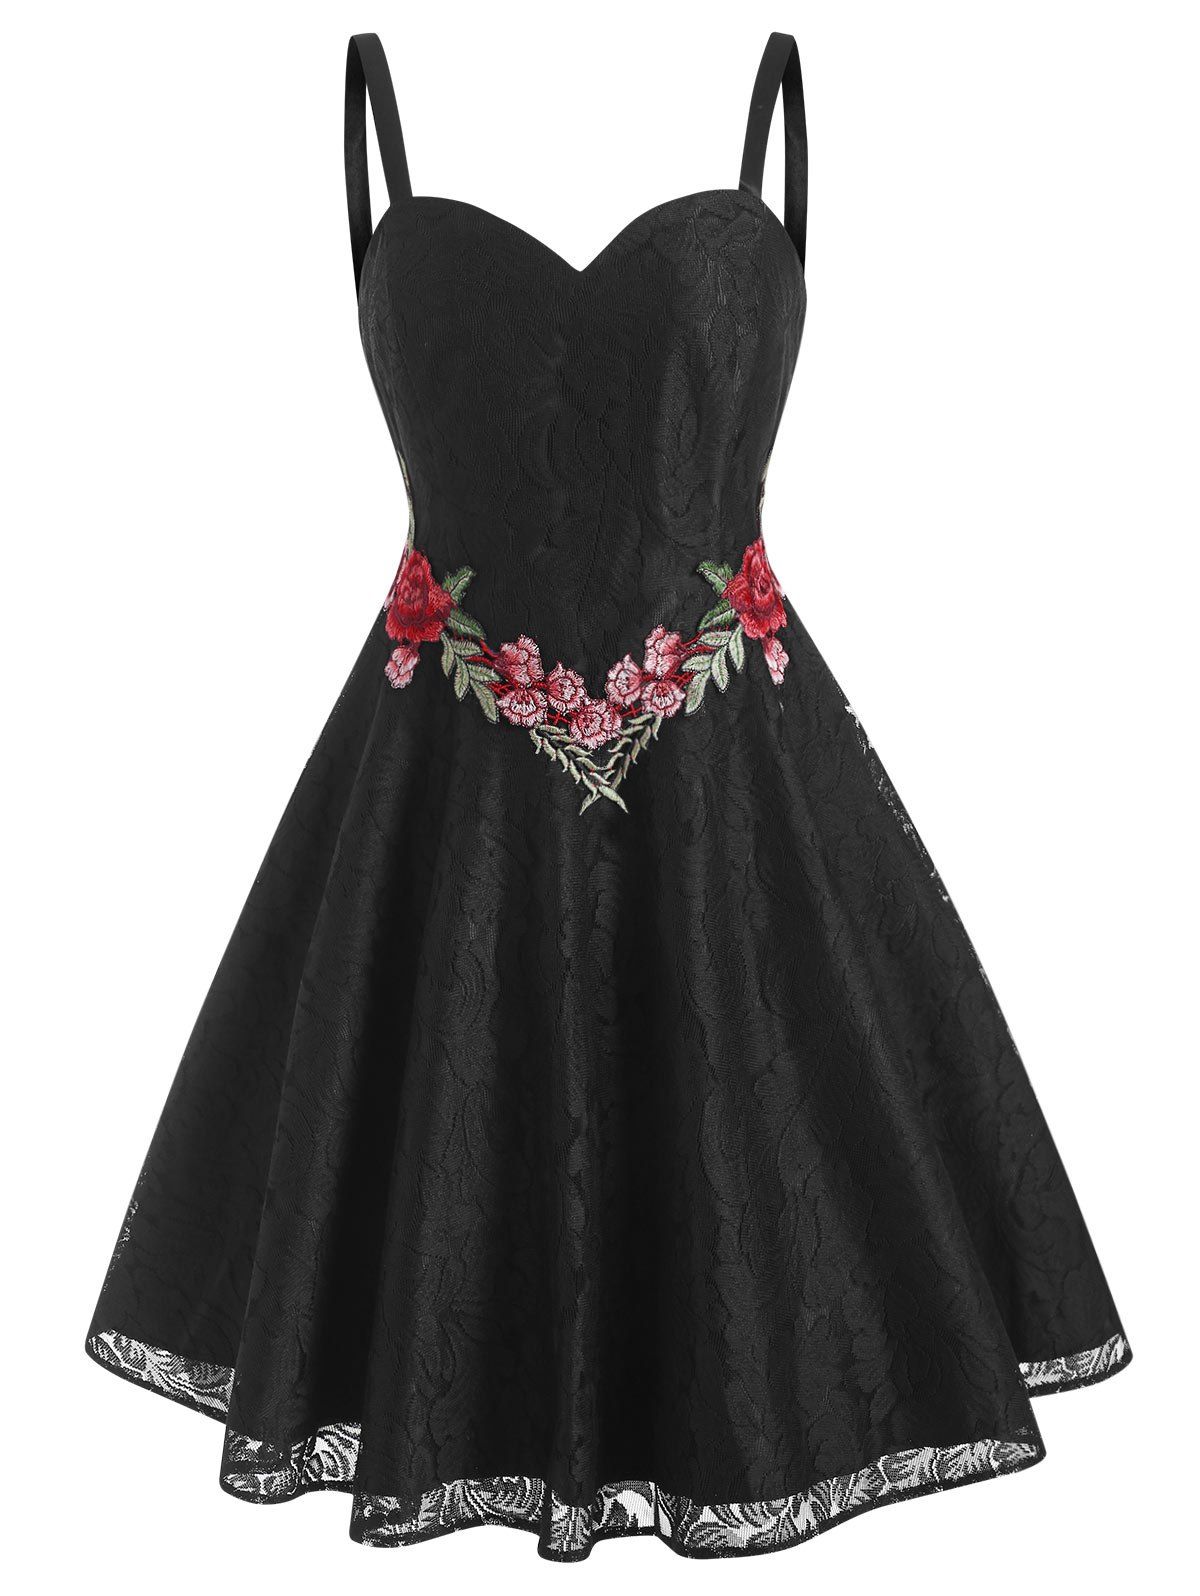 Lace Flower Applique Cami Cocktail Party Dress - BLACK XL